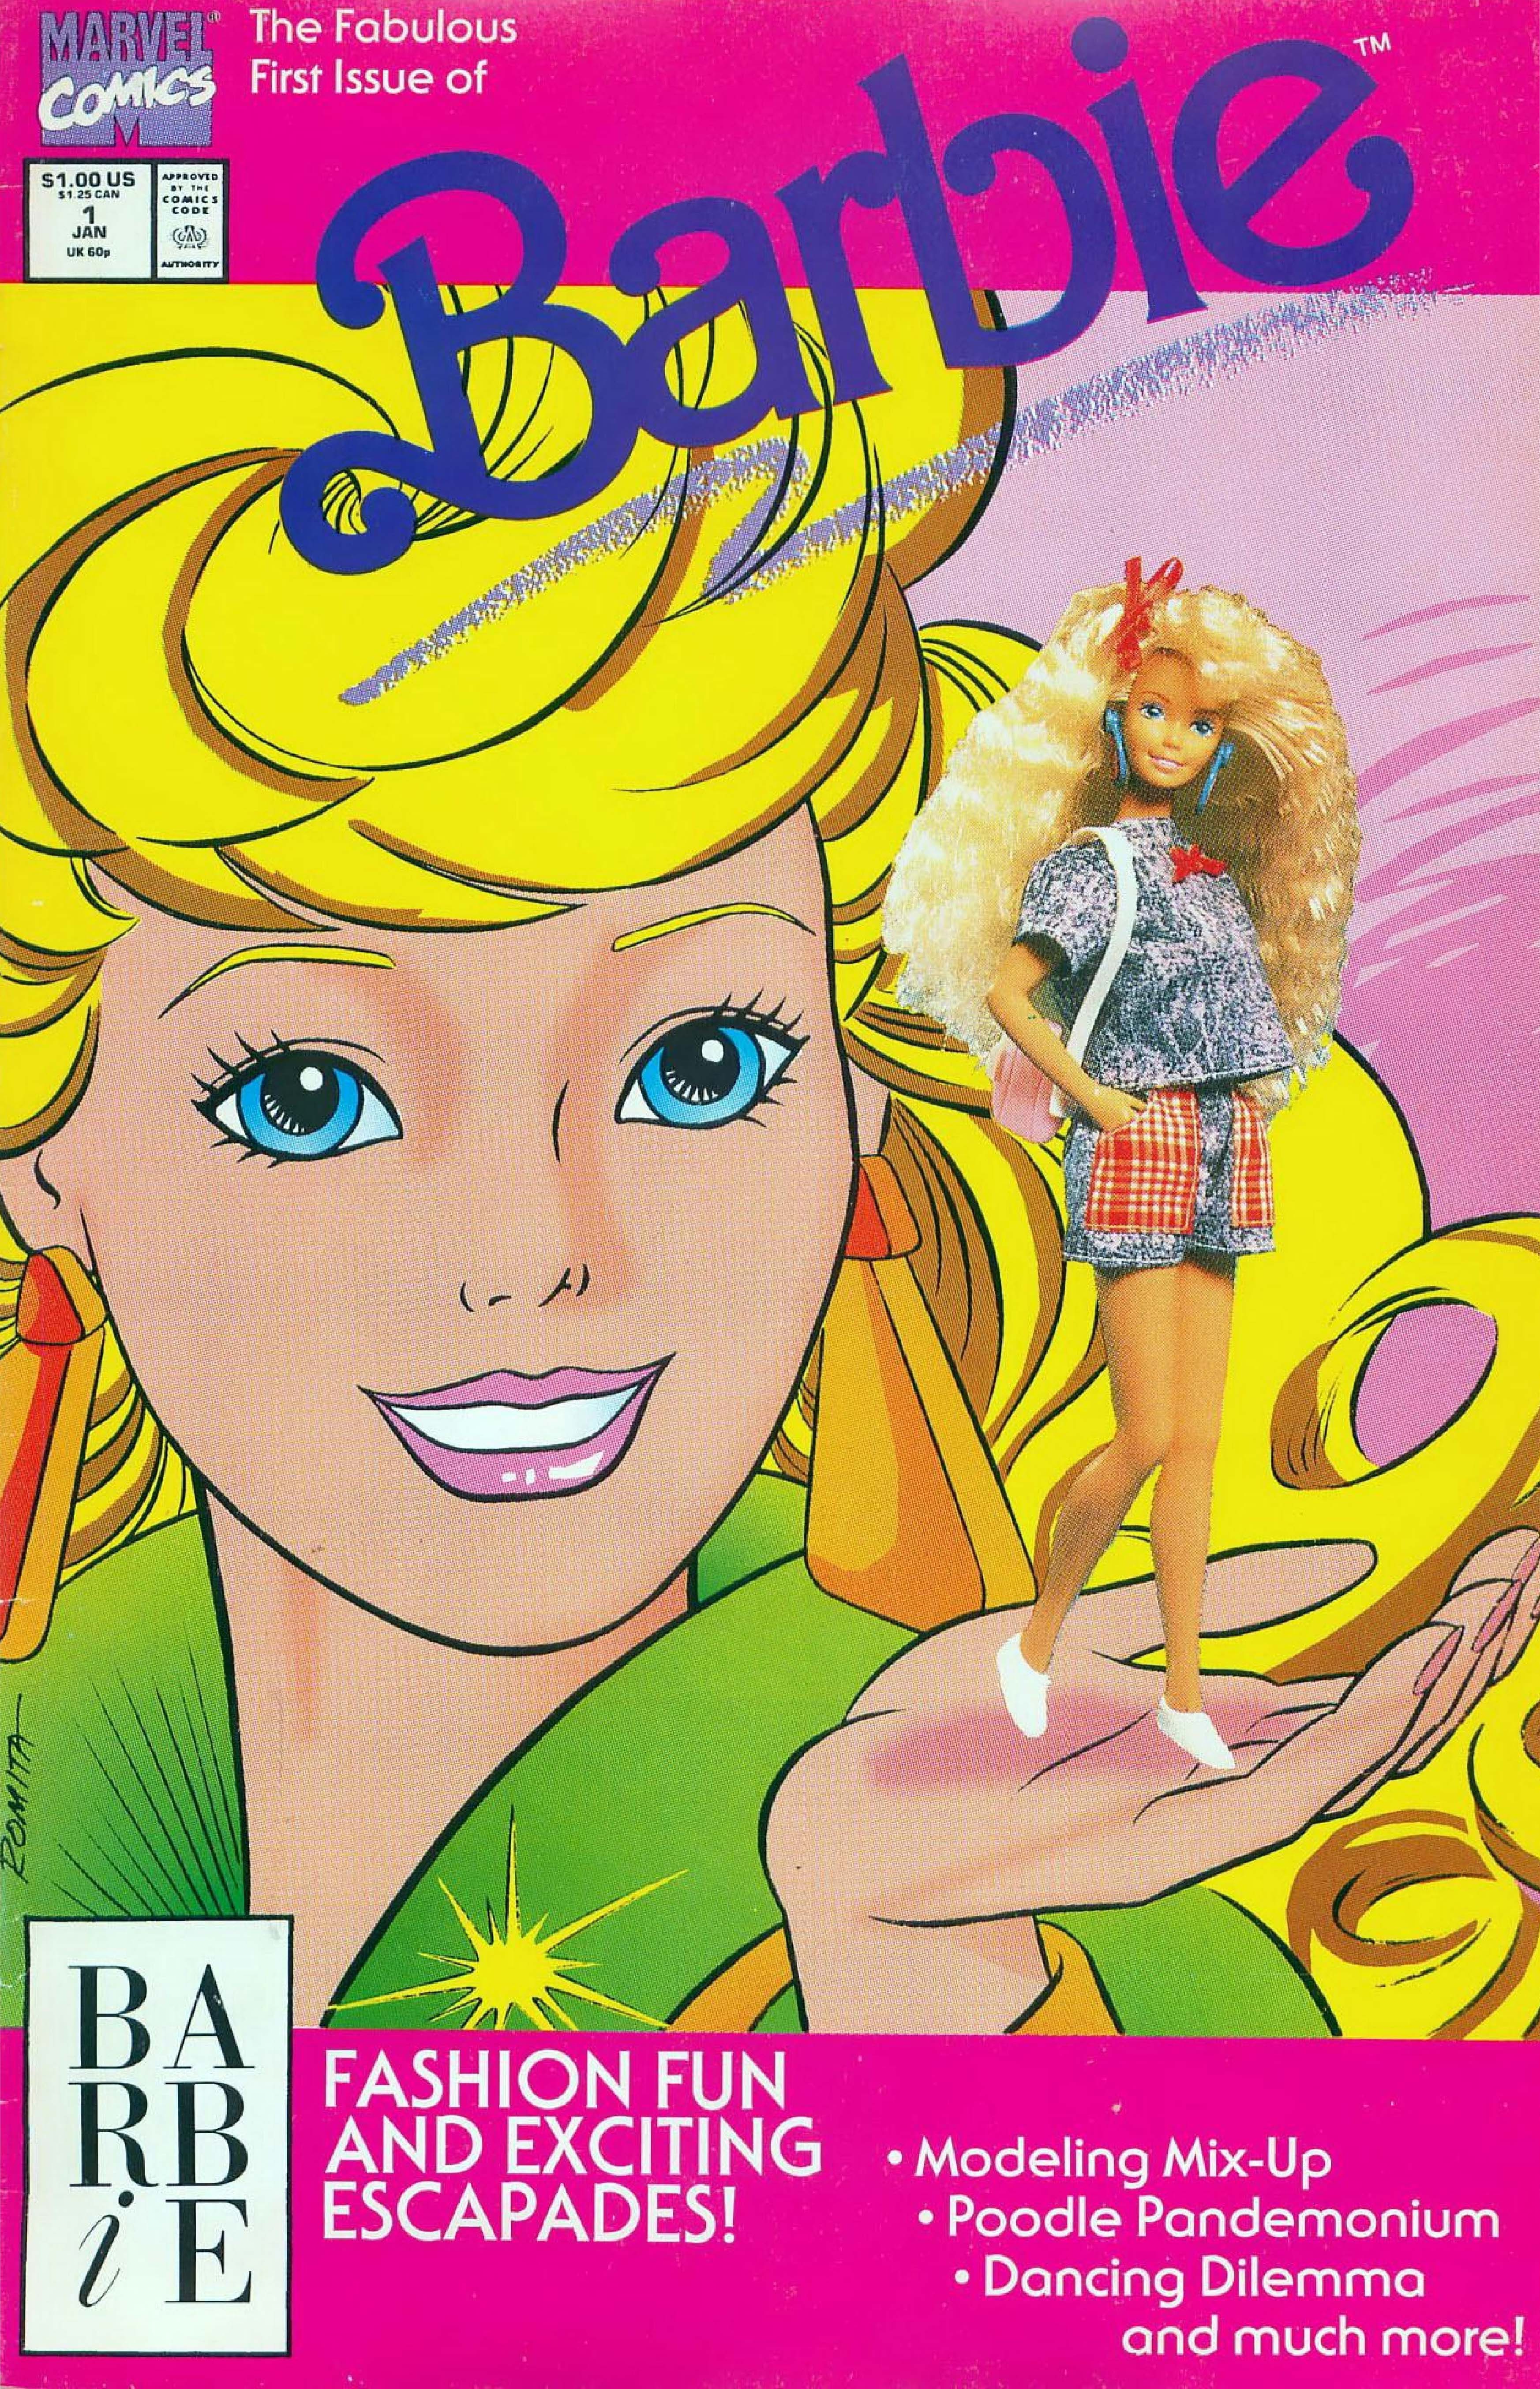 La couverture de Barbie #1.